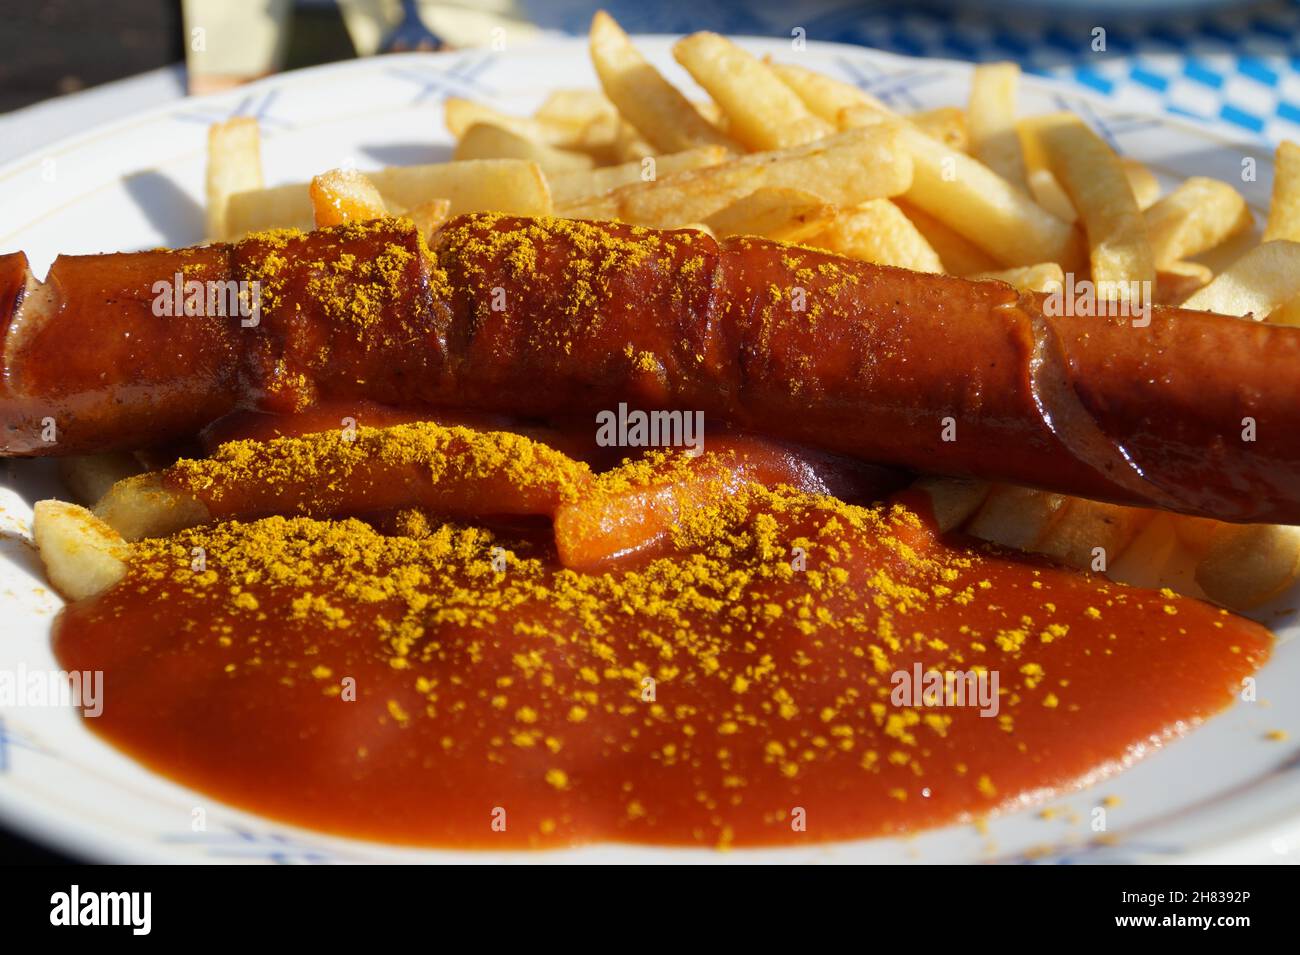 Köstliche heiße frittierte deutsche Currywurst mit knusprigen pommes Frites und Currysauce Stockfoto